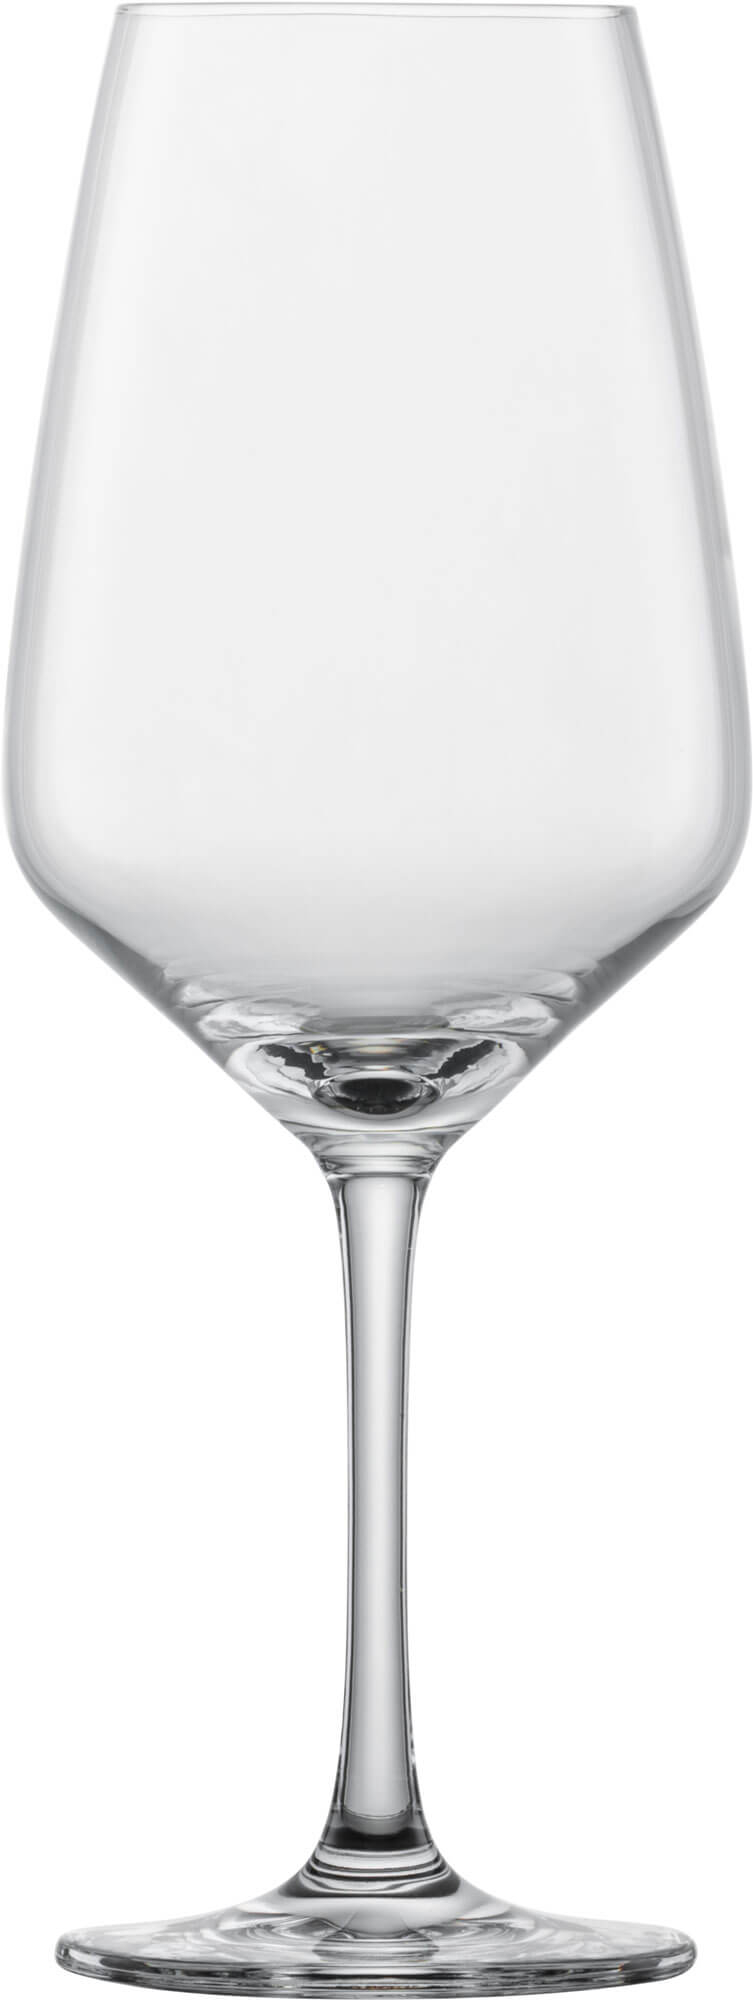 Red wine glass Taste, Schott Zwiesel - 497ml (1 pc.)